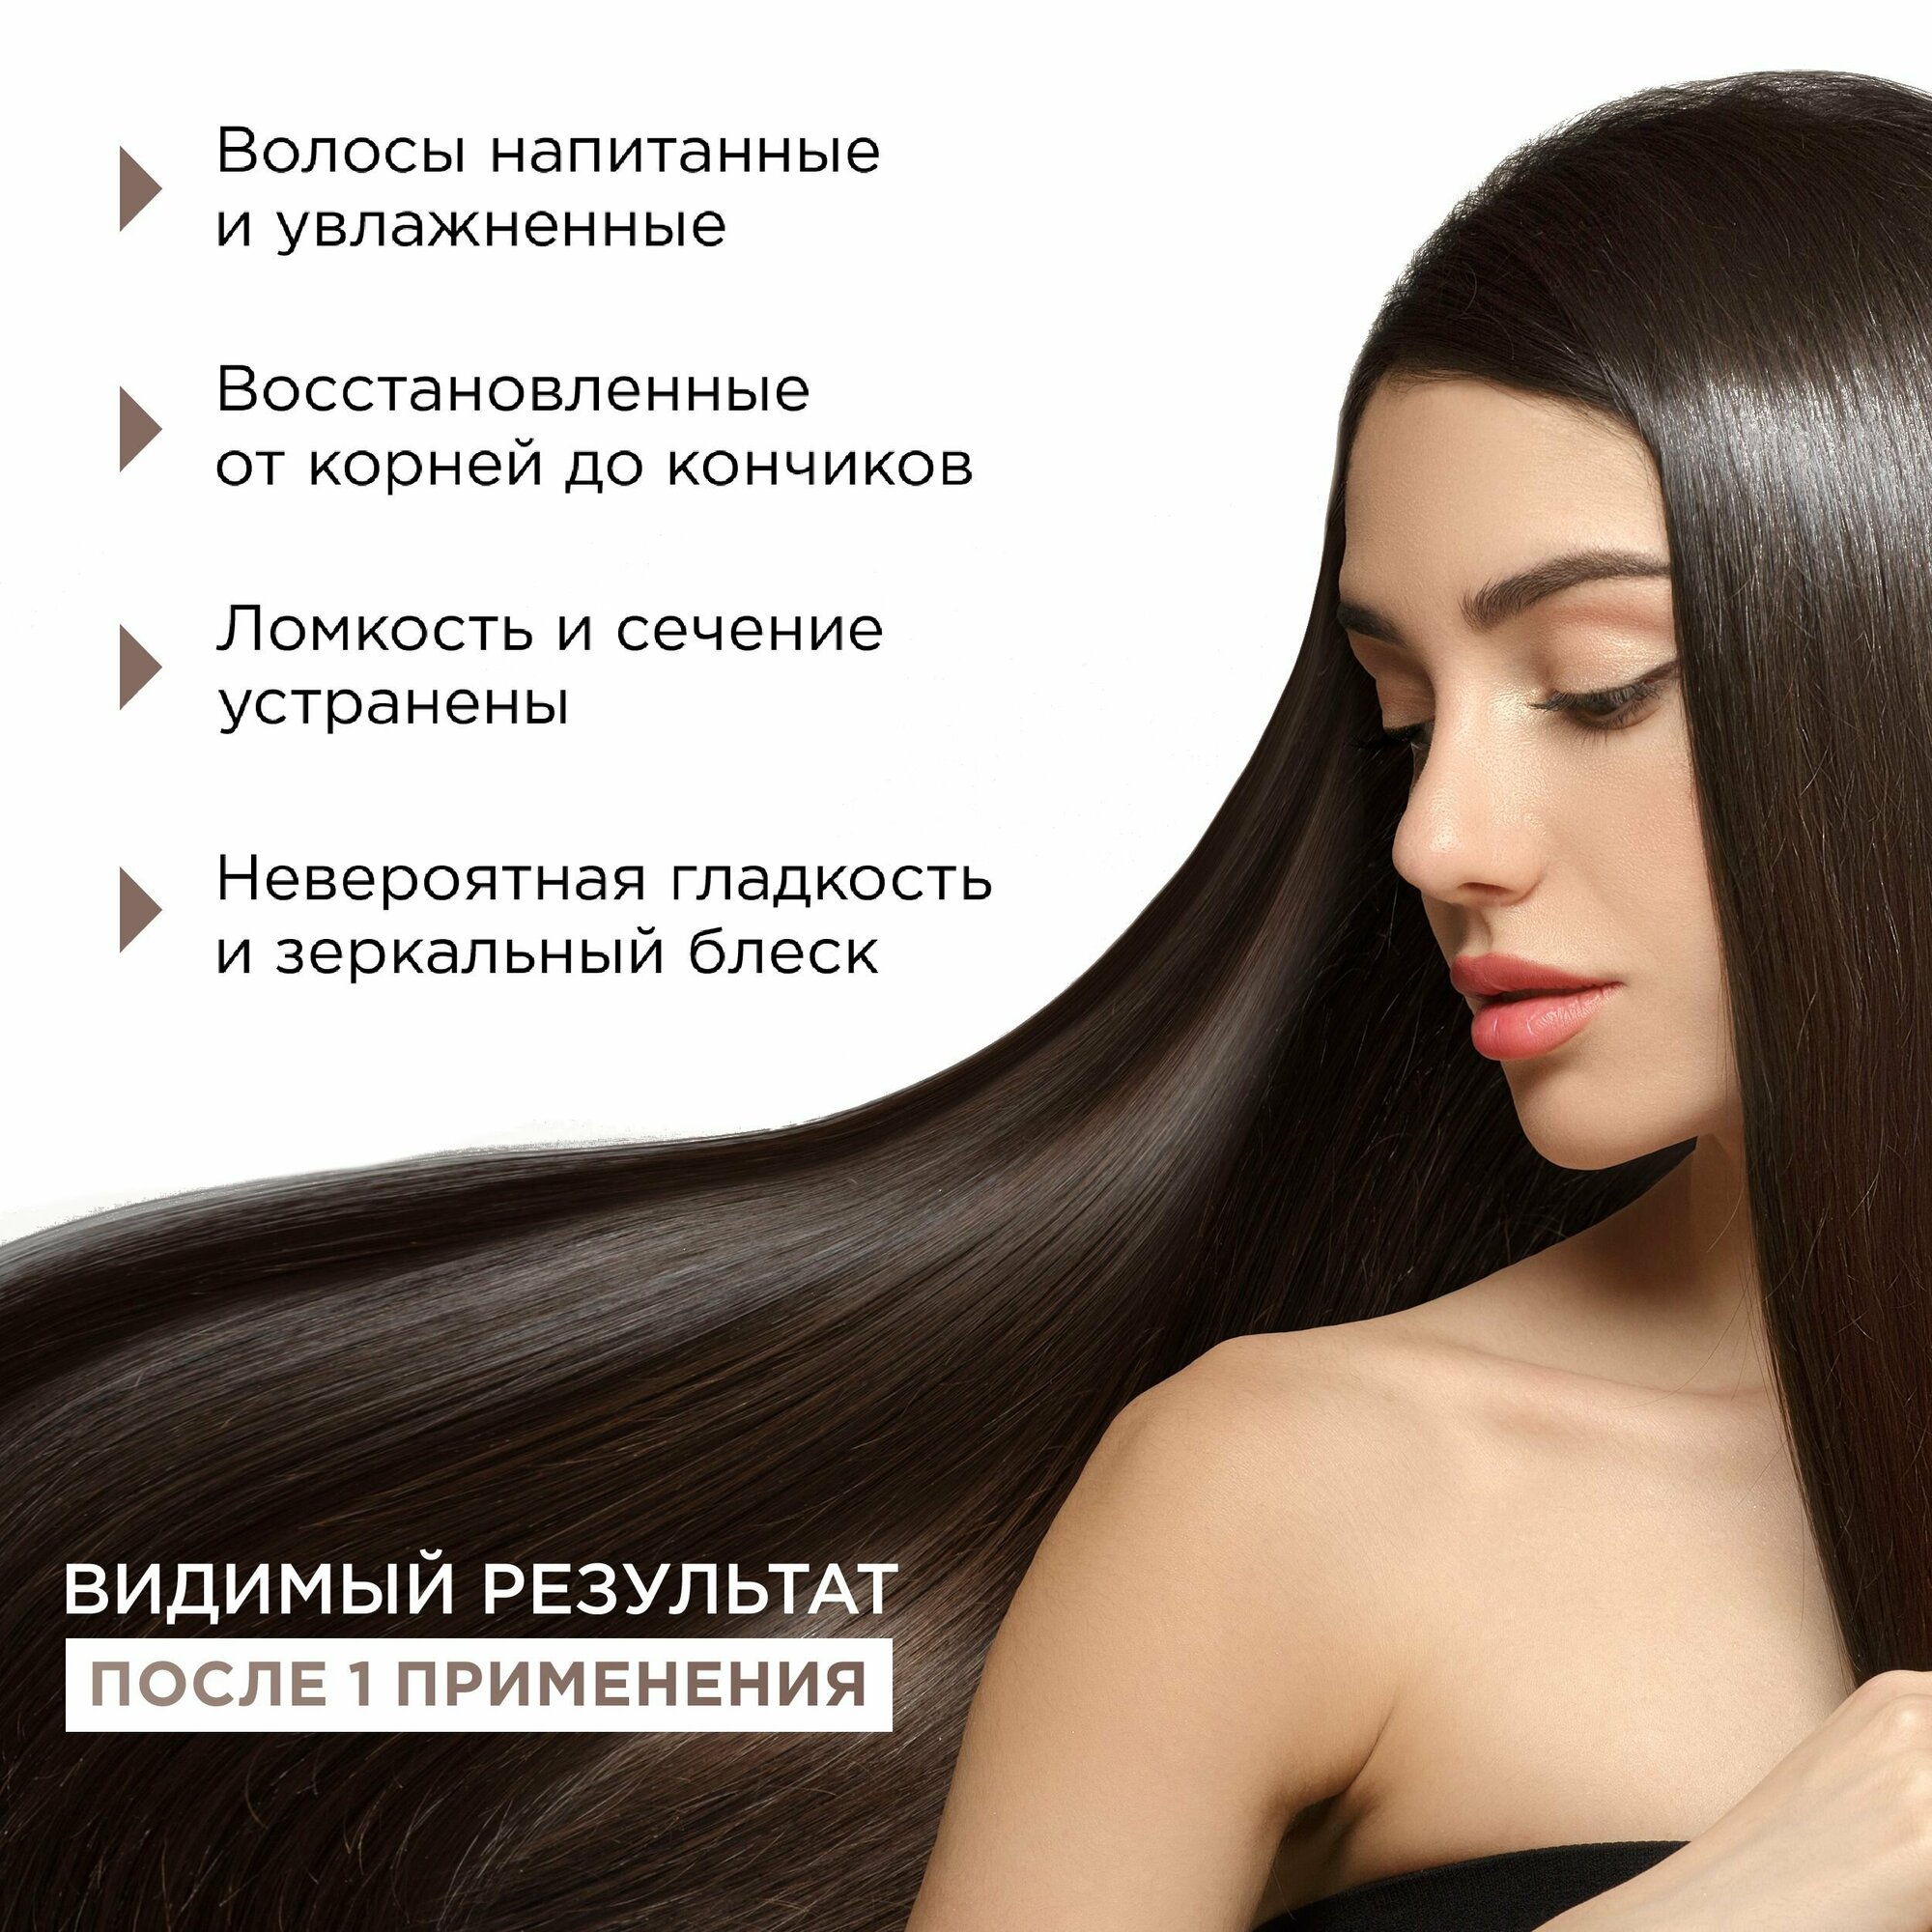 Профессиональный набор MIXIT: шампунь, бальзам - кондиционер и спрей для волос, восстанавливающий и увлажняющий уход за волосами и кожей головы